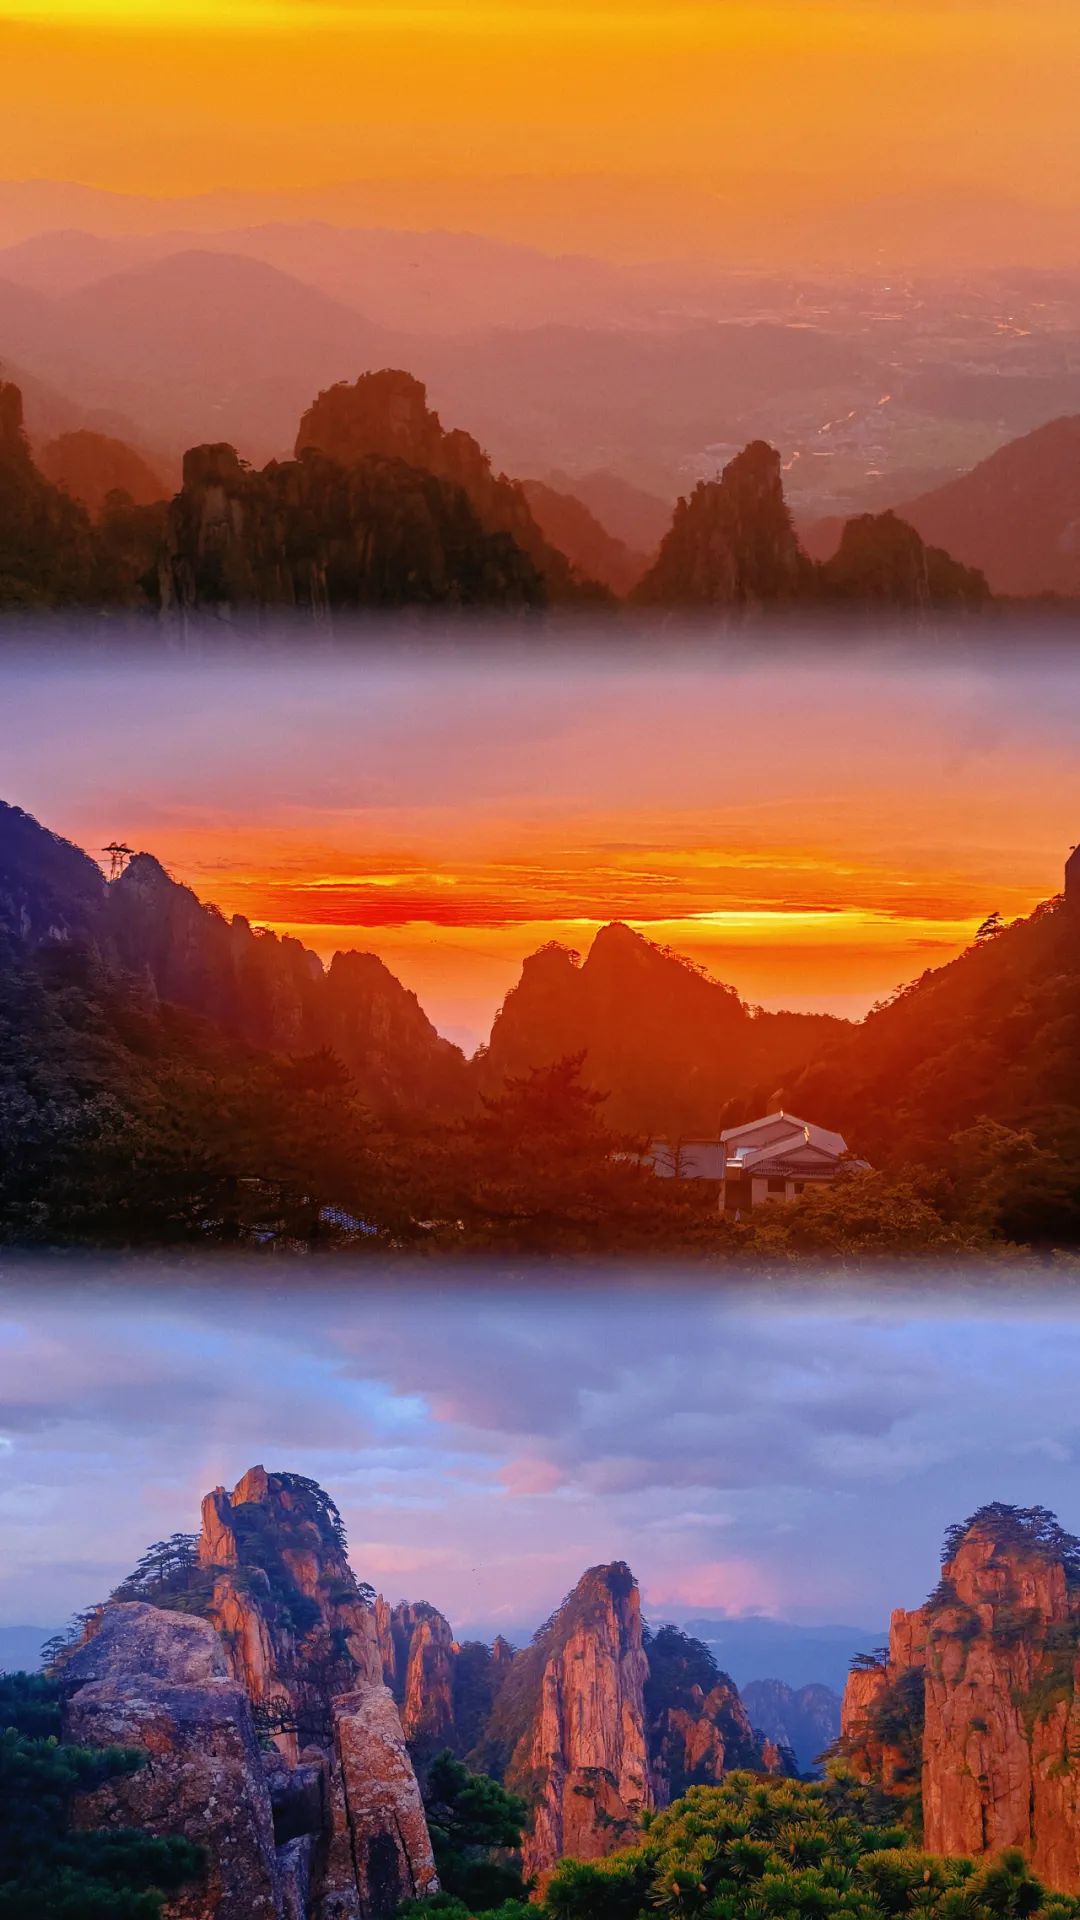 黄山日出日落,天地间最美的风景!